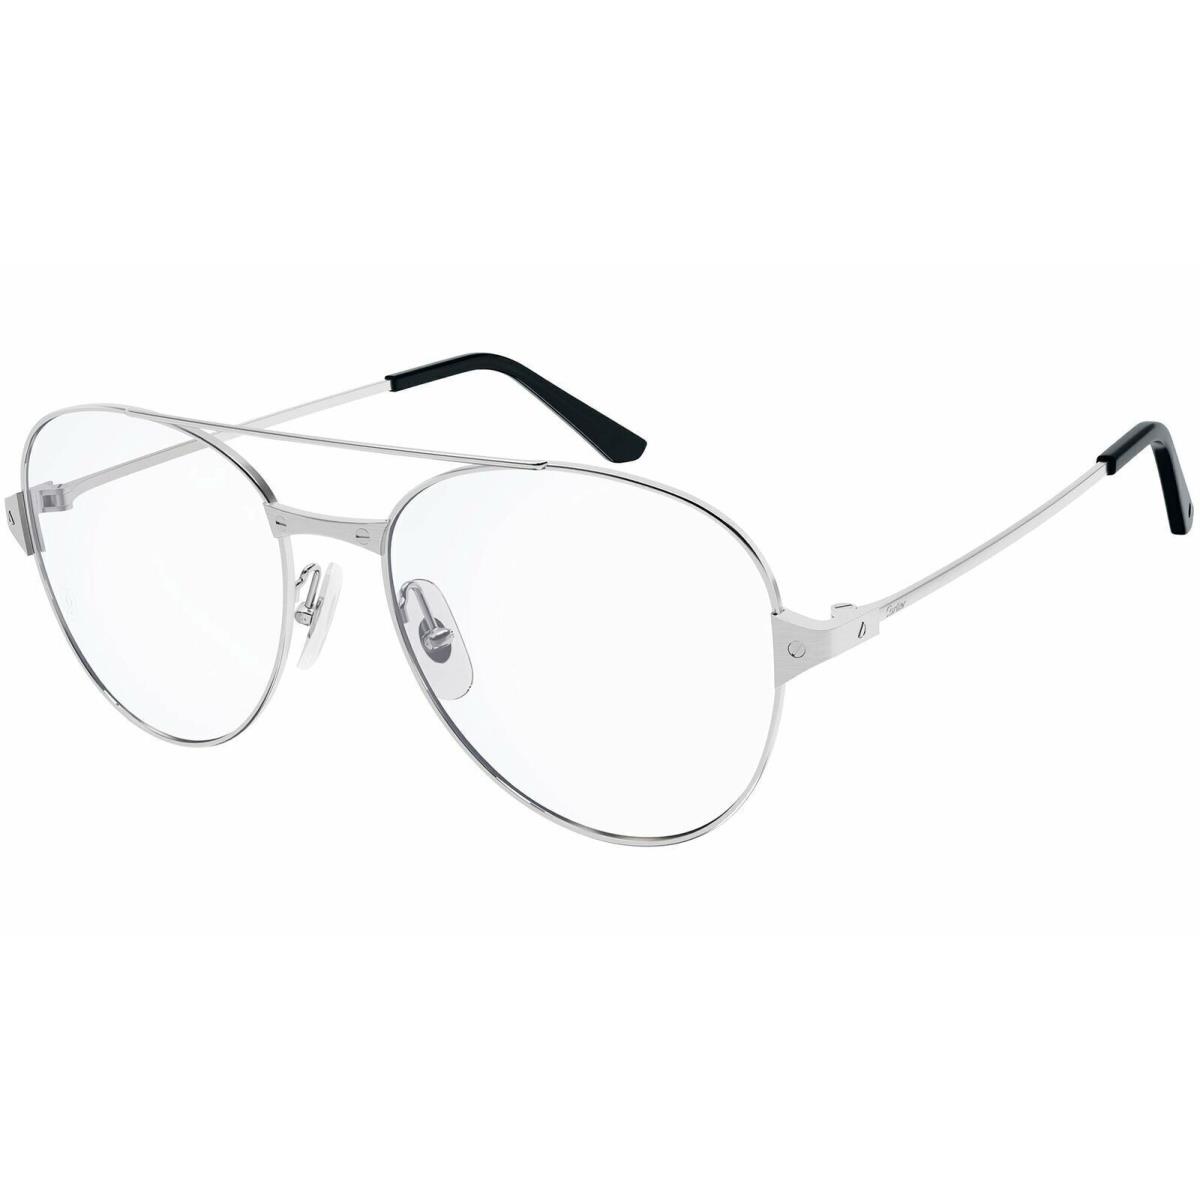 Cartier CT0307o-002 Silver Silver Eyeglasses